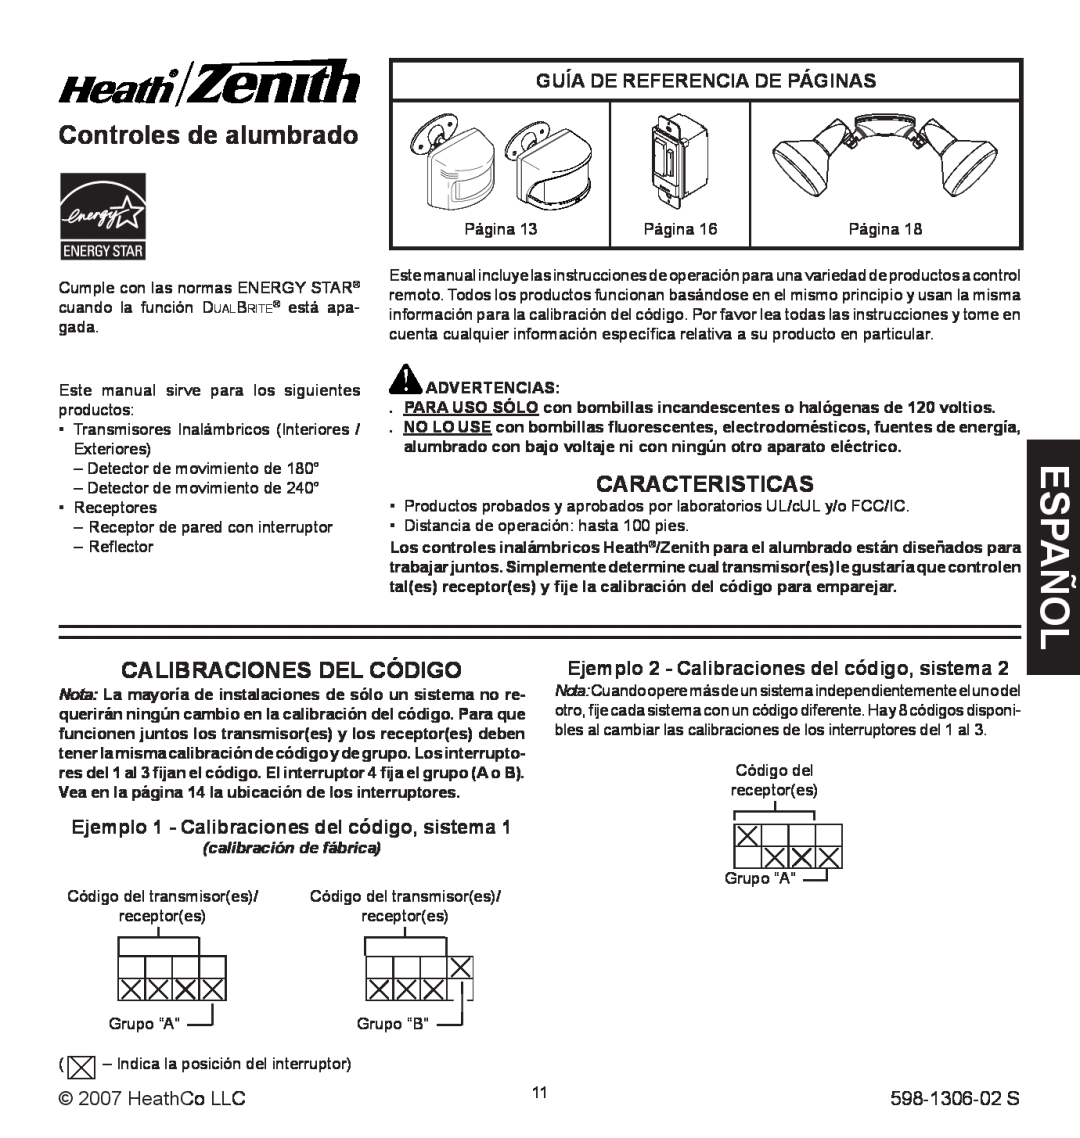 Heath Zenith 598-1306-02 Controles de alumbrado, Calibraciones Del Código, Ejemplo 1 - Calibraciones del código, sistema 